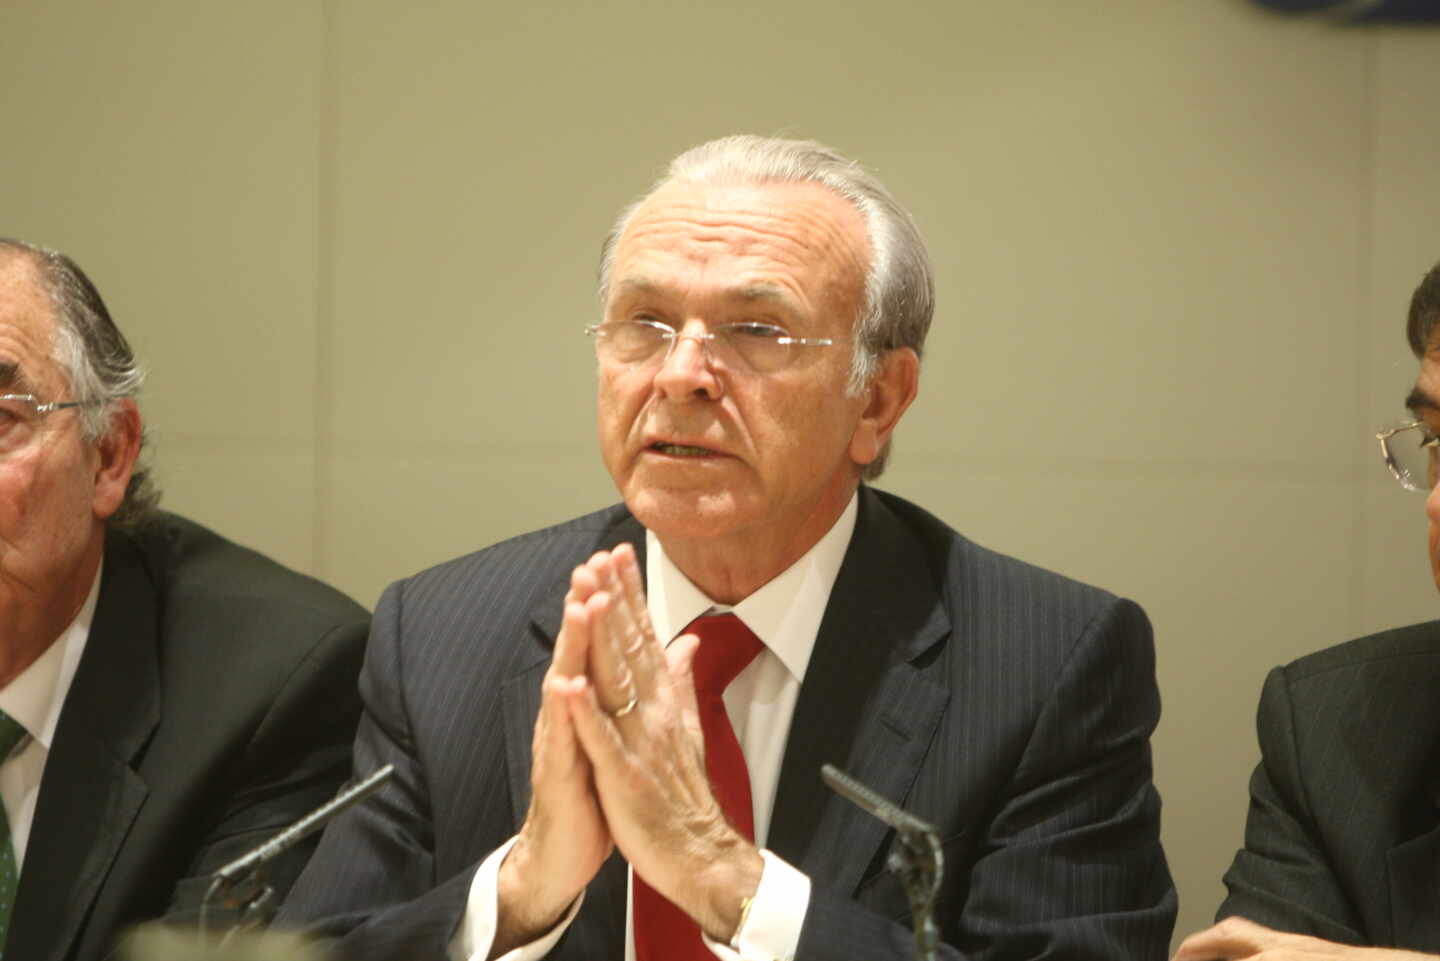 Isidro Fainé, presidente de Criteria Caixa durante un evento realizado en Madrid de la CECA